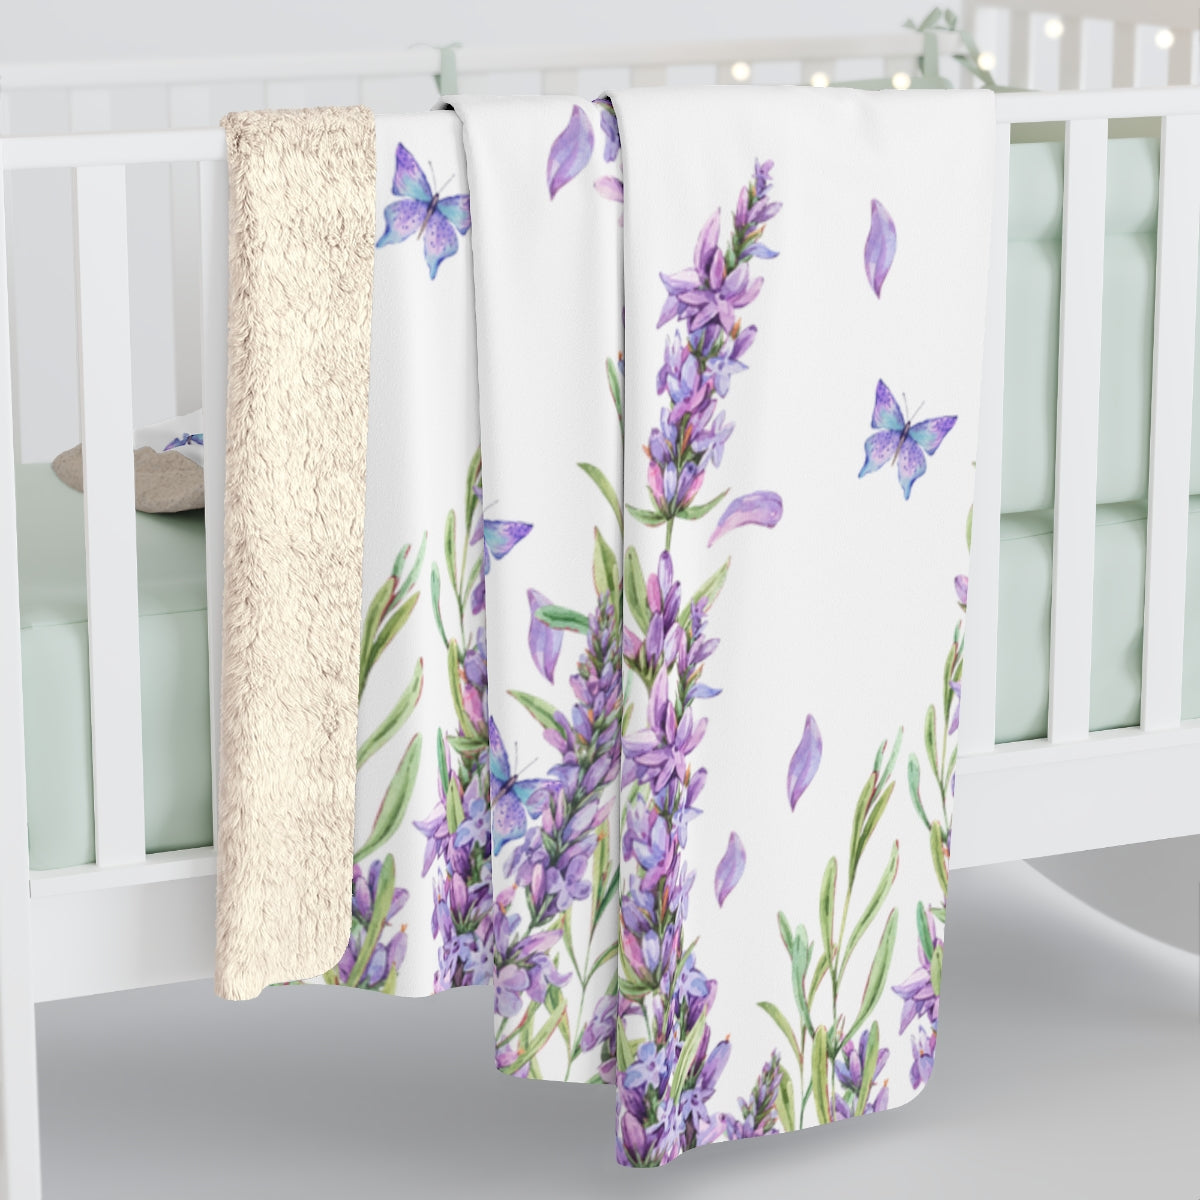 Personalized Blanket / Lavender Blanket / Purple Nursery Blanket